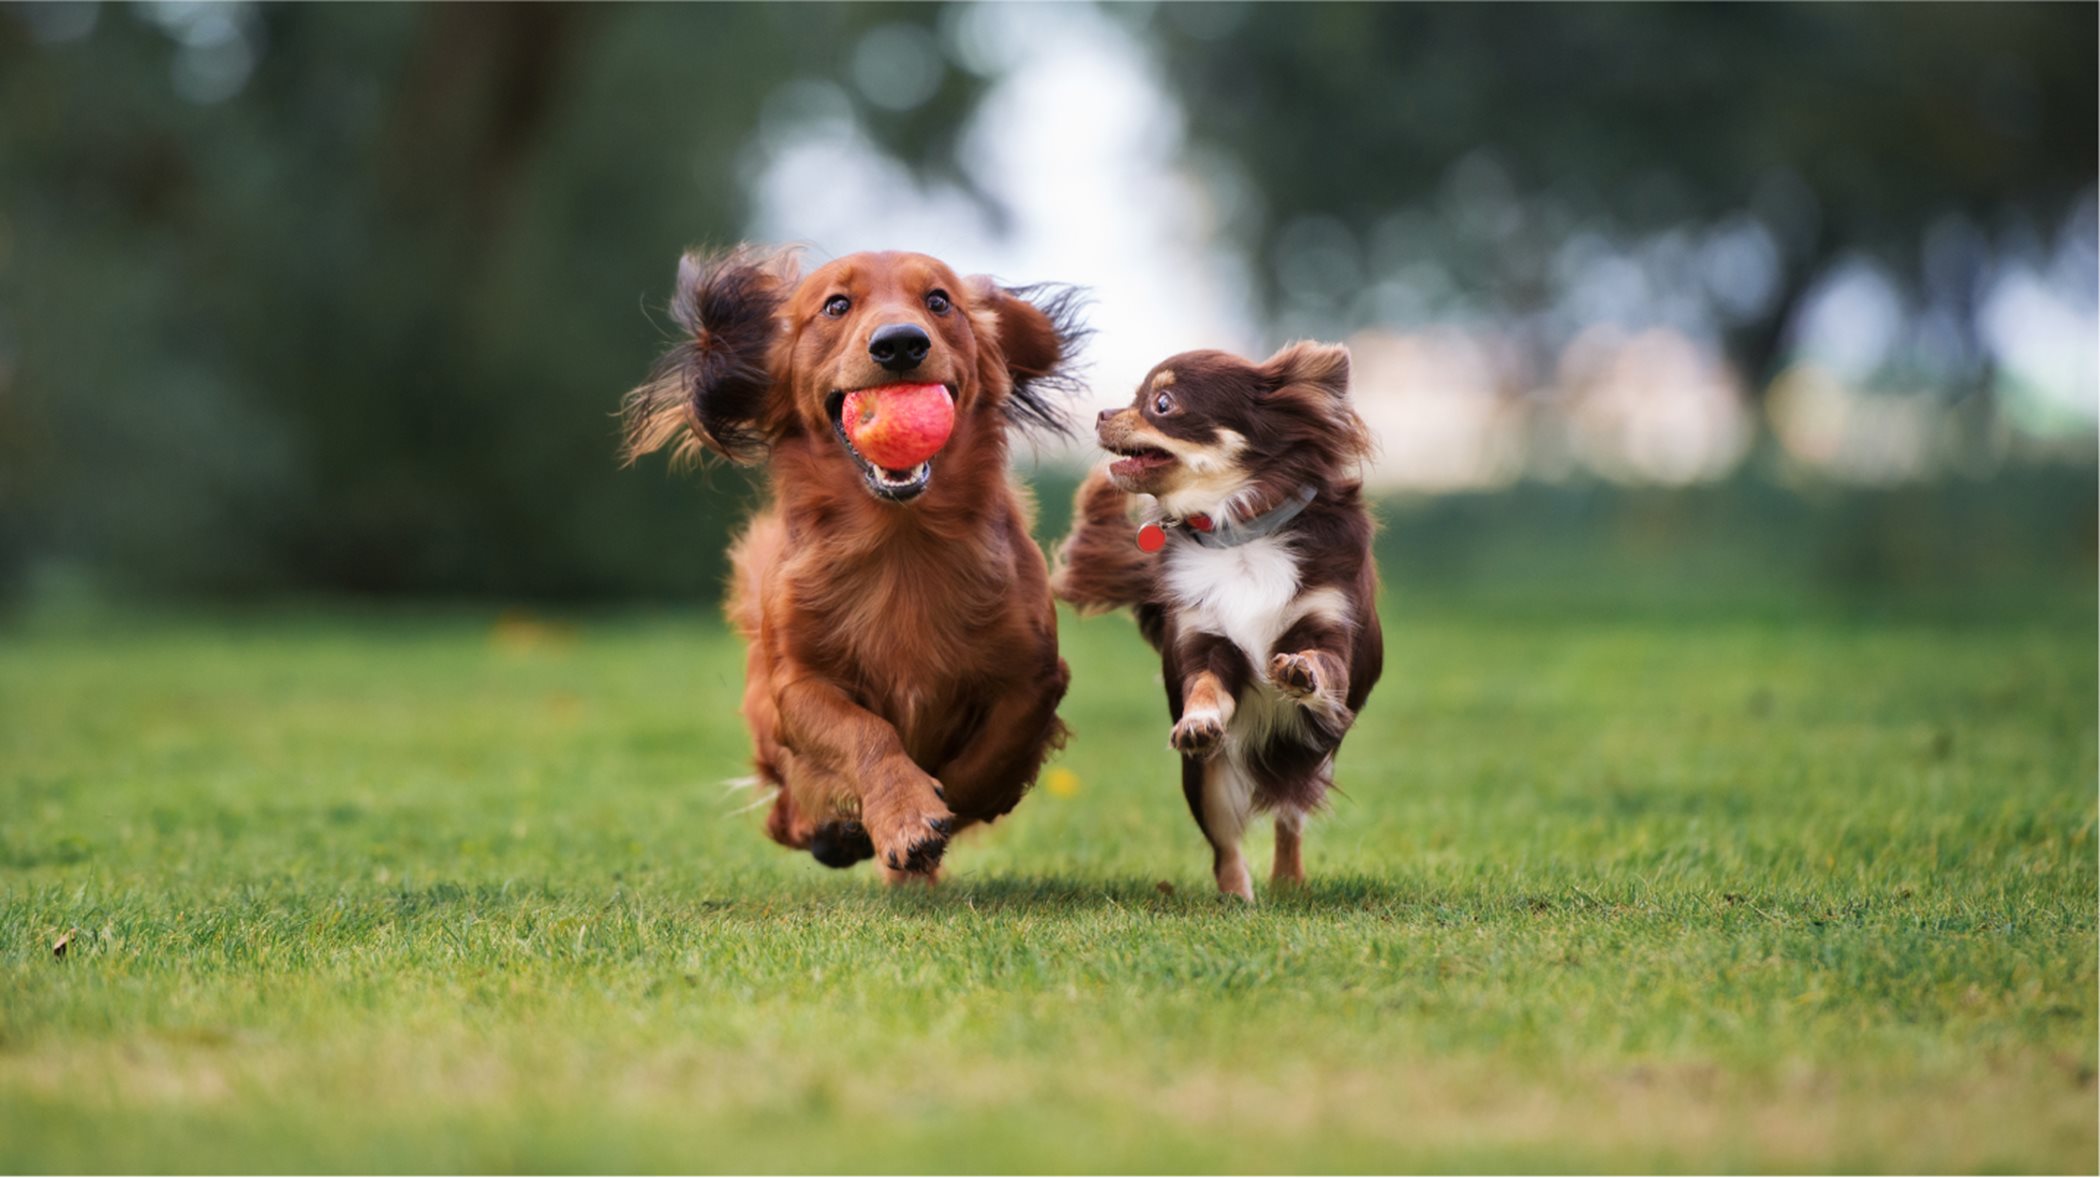 Two dogs running around